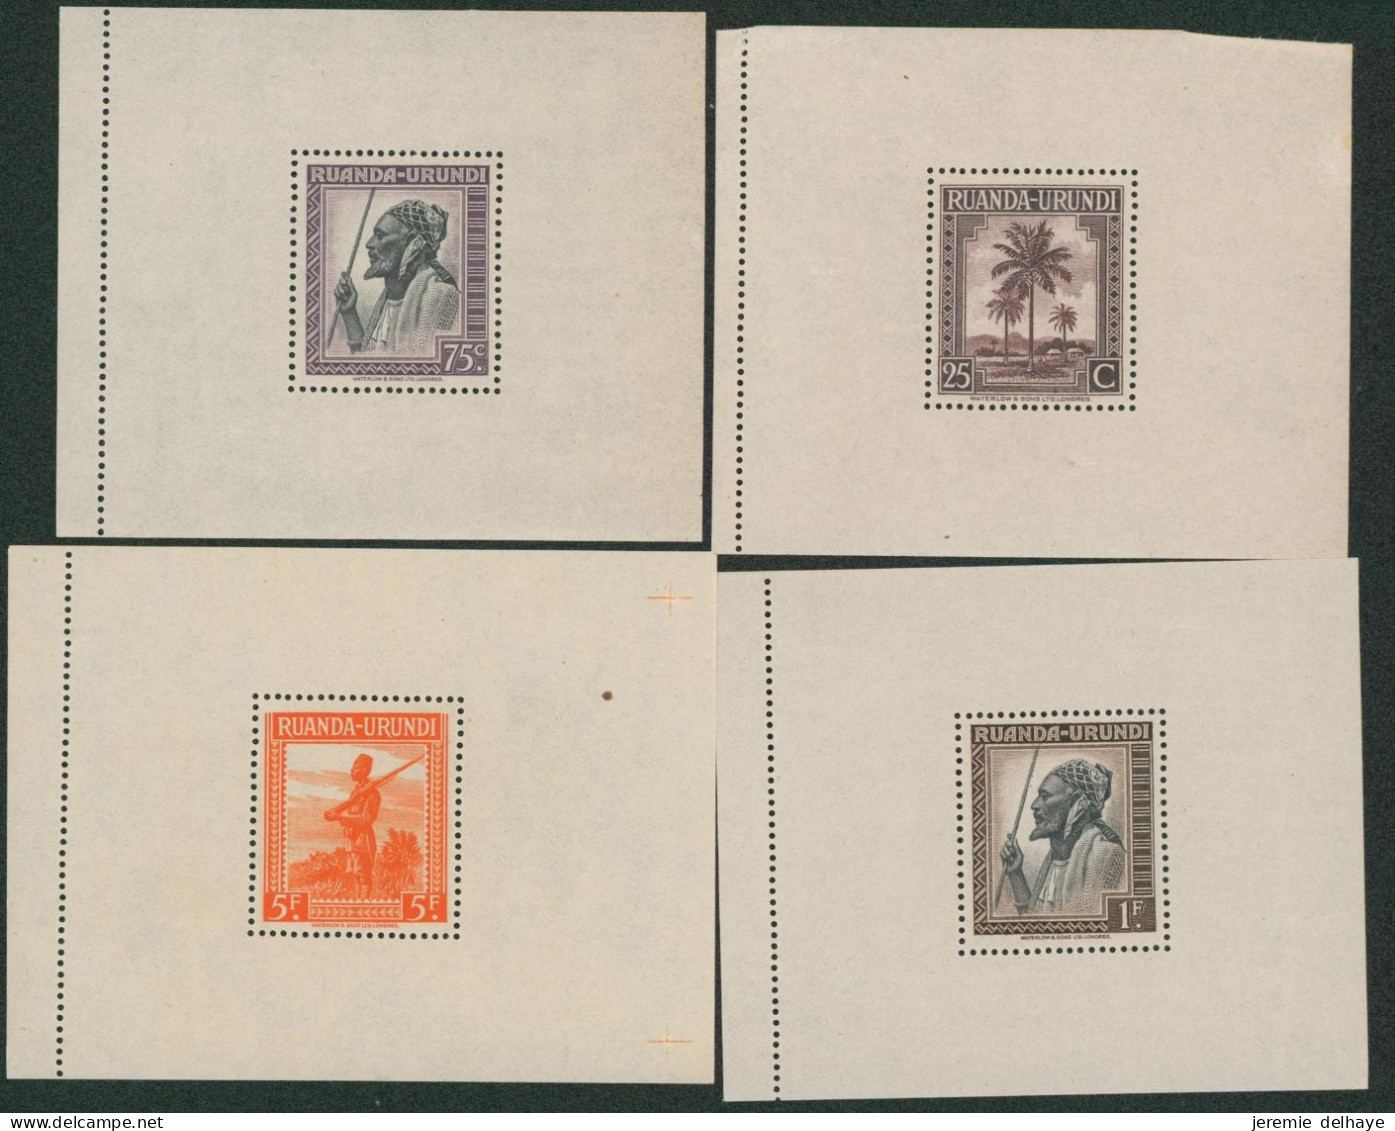 Blocs Messages çàd BL3/10** (Congo) + BL 1/4** (Ruanda). Jeu Complet, Bon état Neuf Sans Charnières (MNH) - Unused Stamps